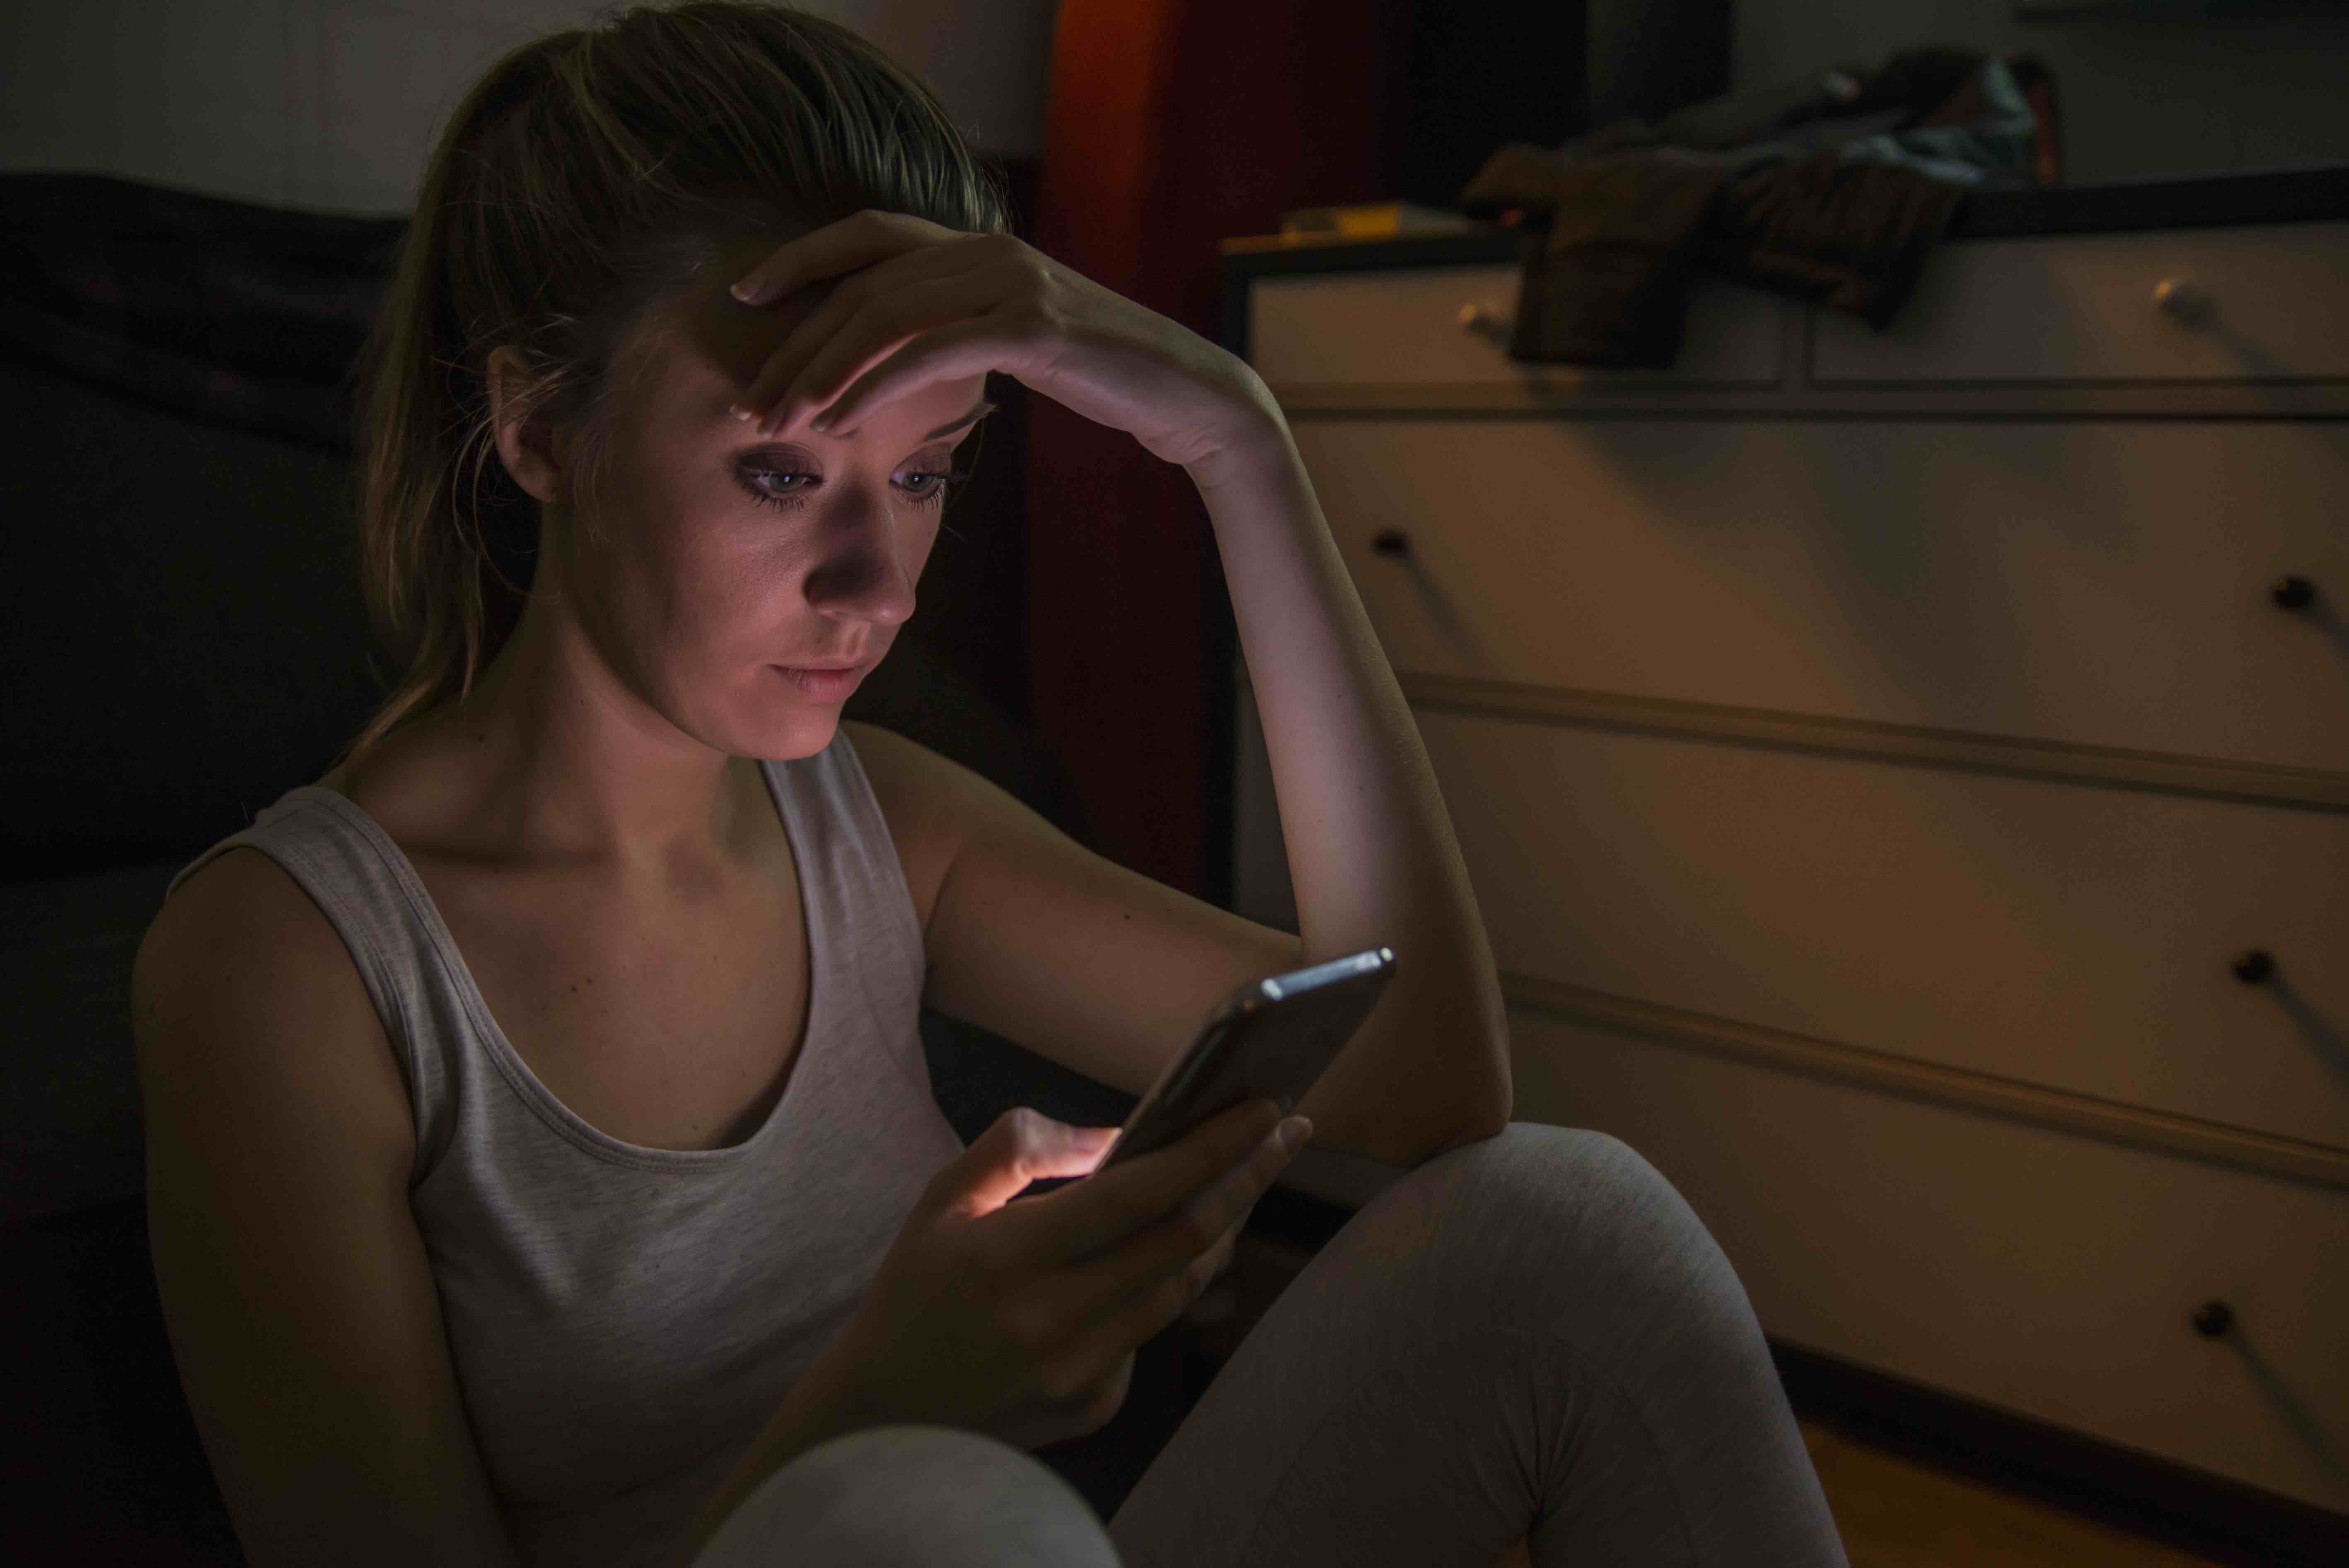 Teenage girl cyber bullying victim